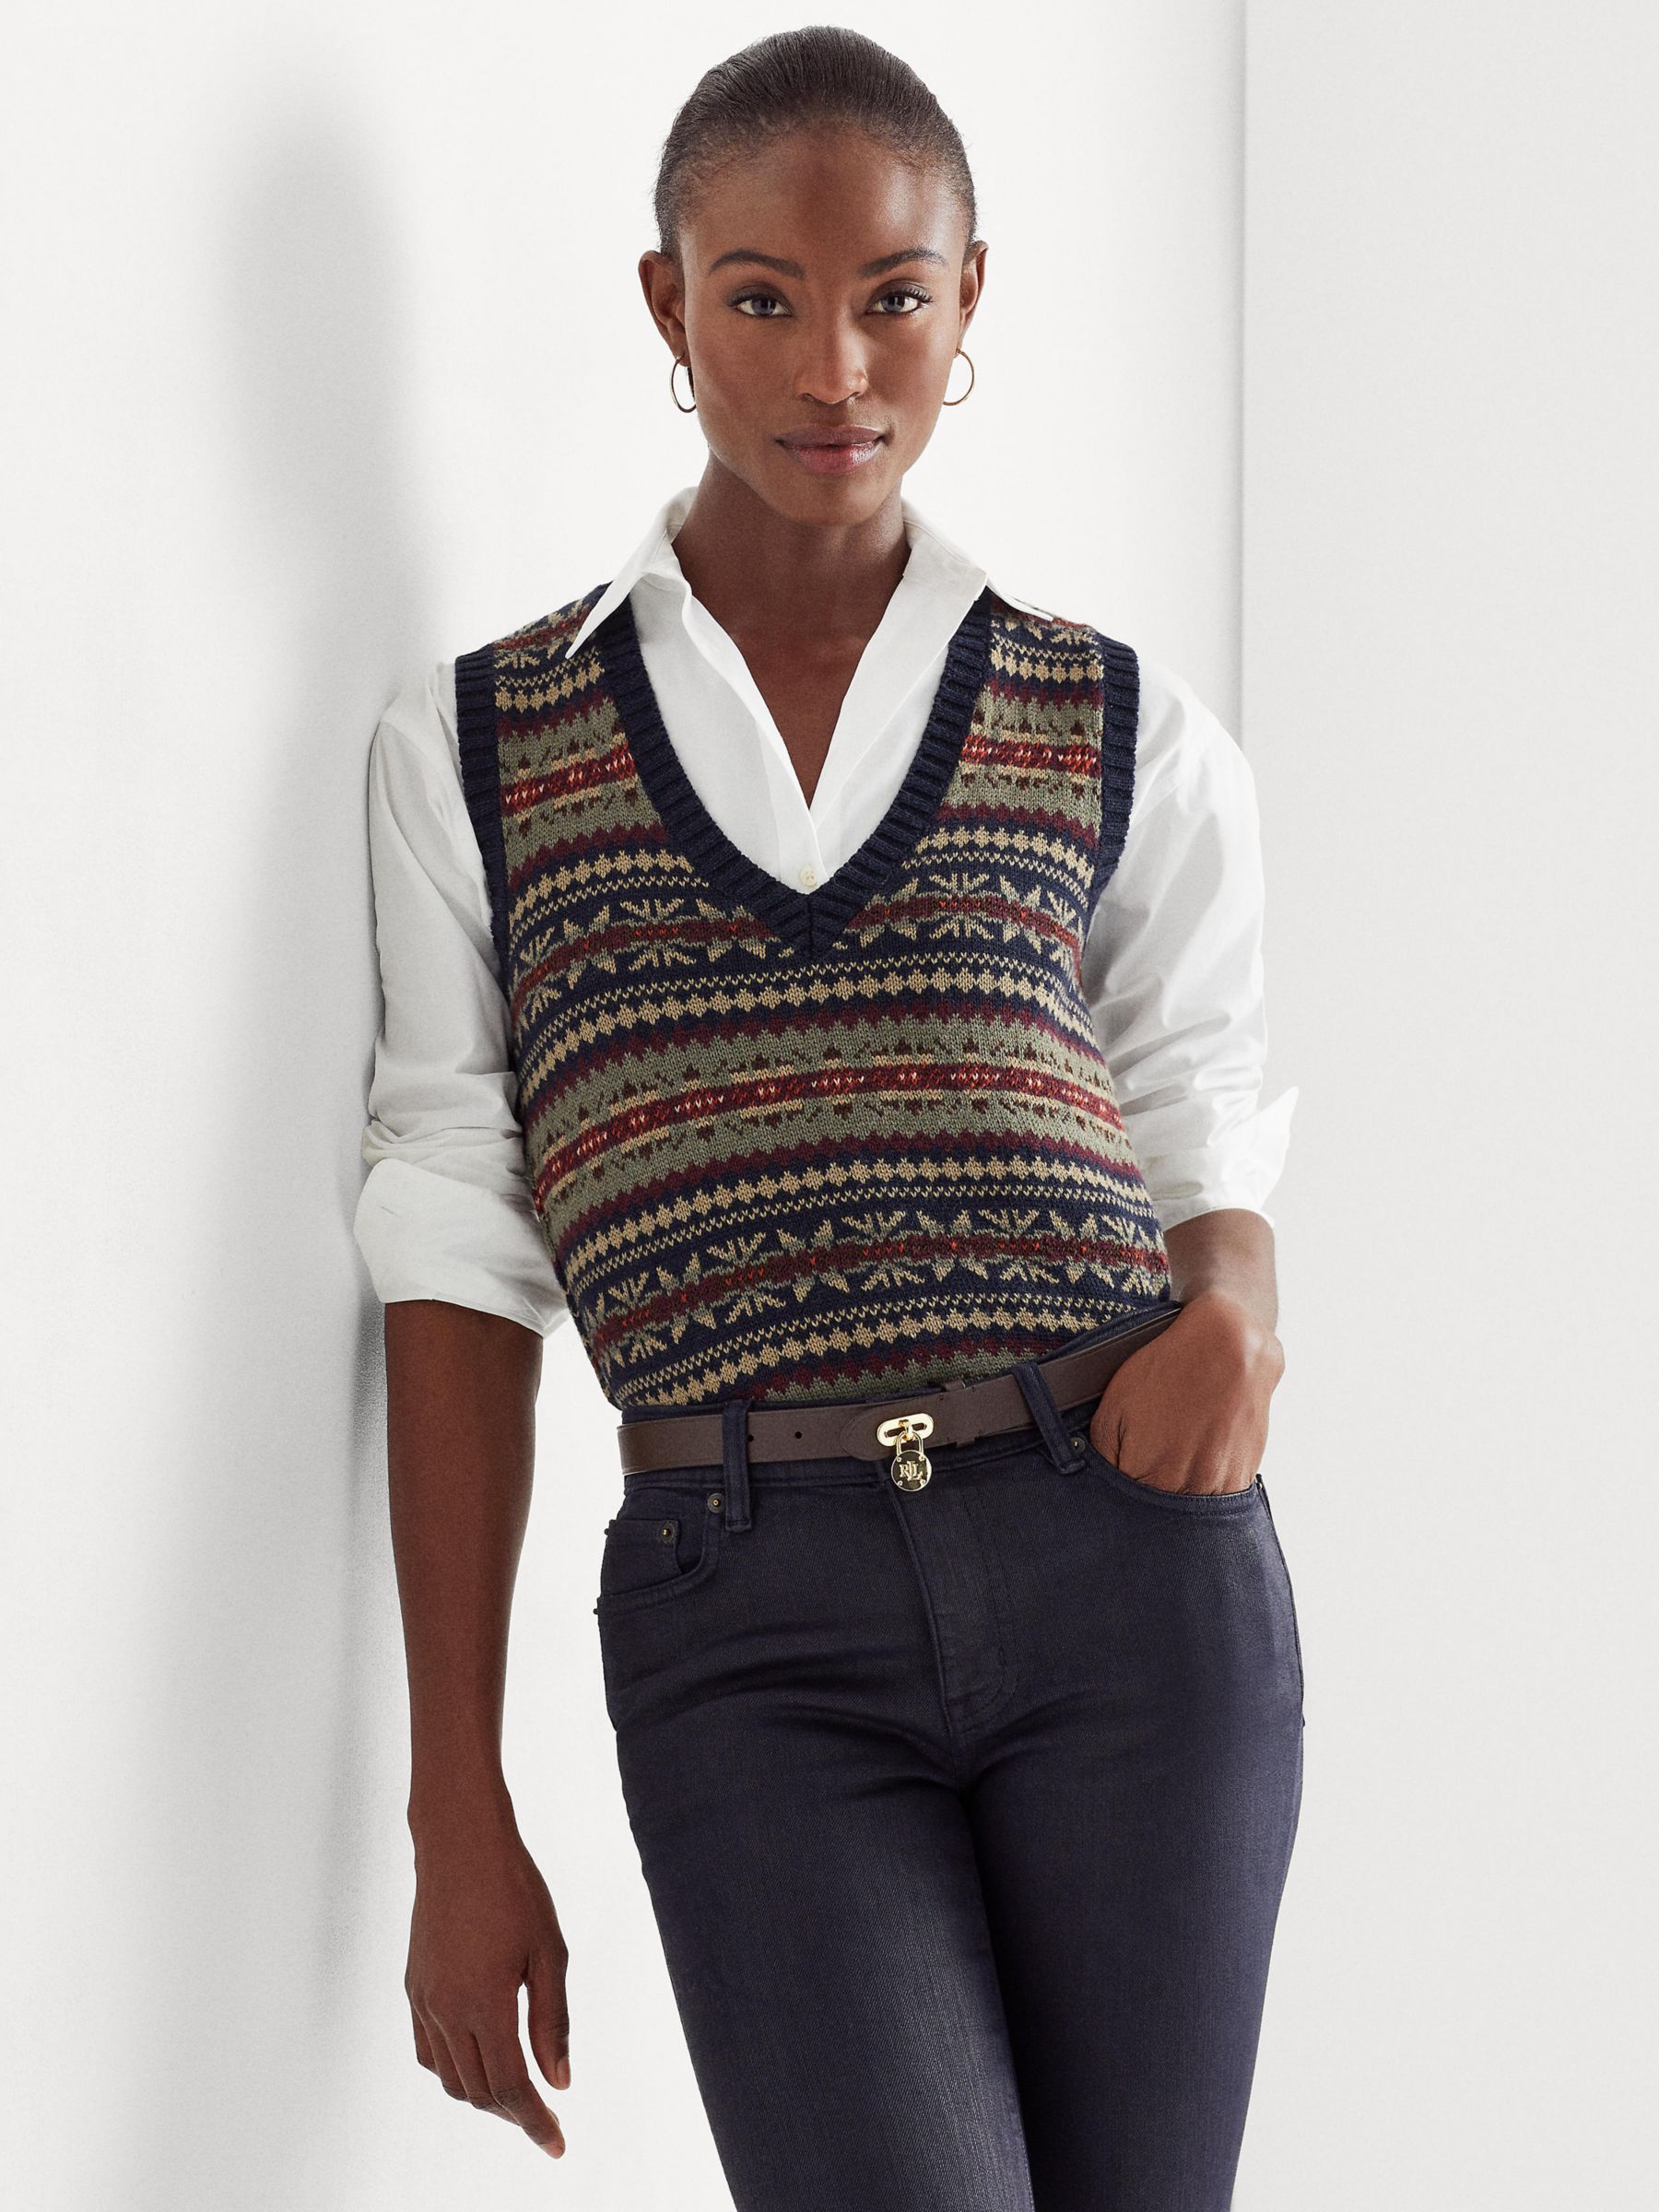 Ralph Lauren - Cream Cashmere V-Neck Sweater Vest Sz M – Current Boutique